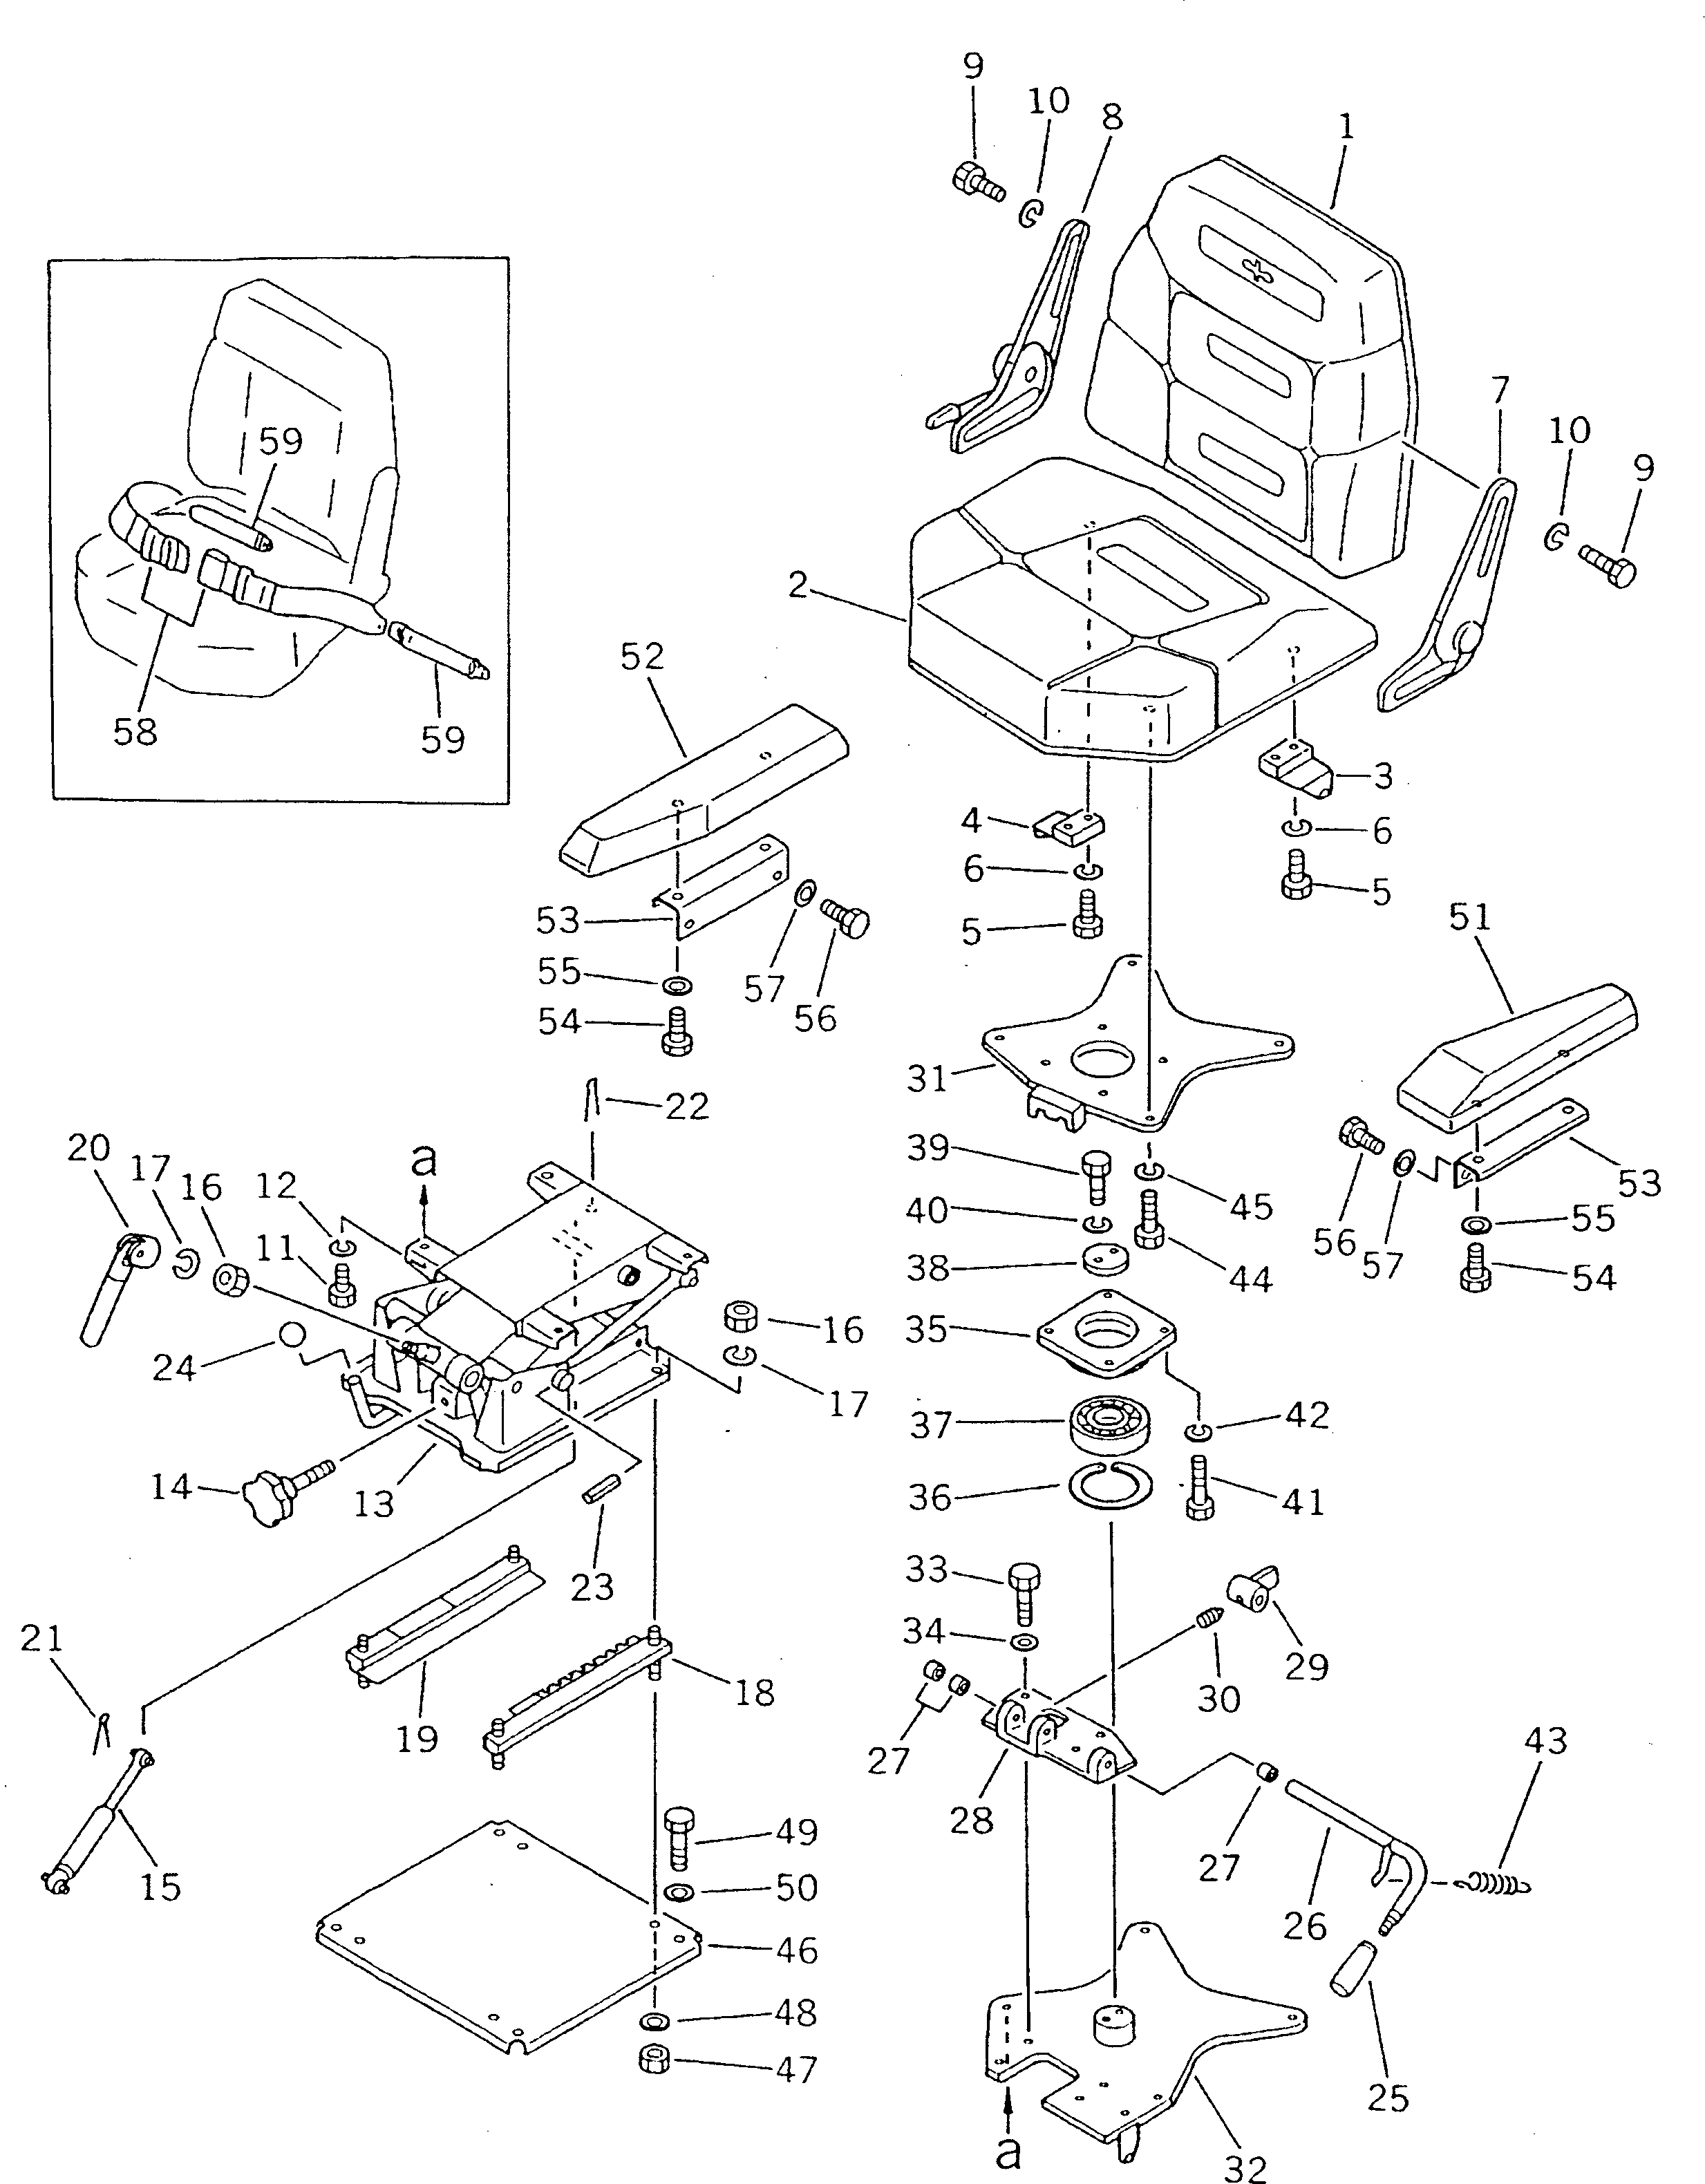 100. OPERATOR'S SEAT [5101] - Komatsu part D135A-1 S/N 10001-UP [d135a-1c]